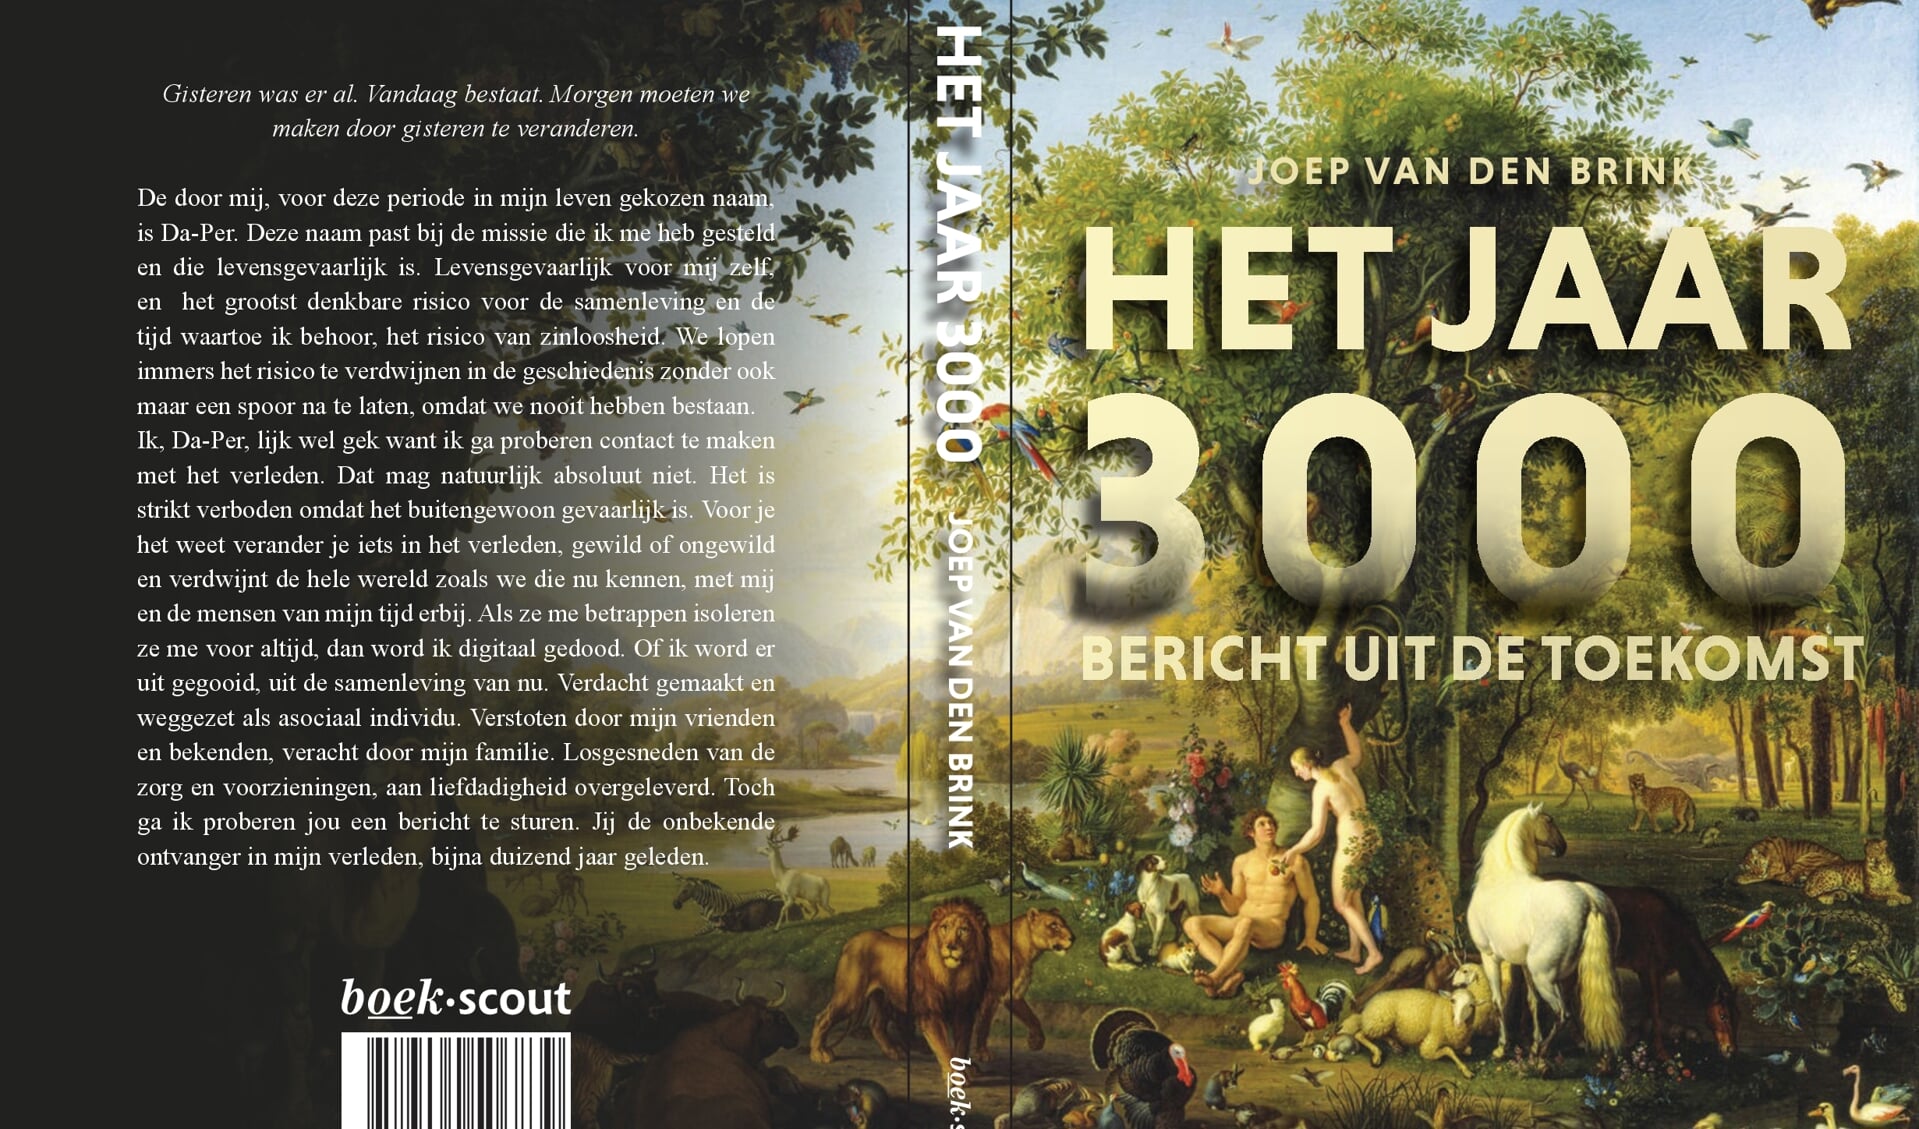 De omslag van Het jaar 3000, bericht uit de Toekomst, van Joep van den Brink